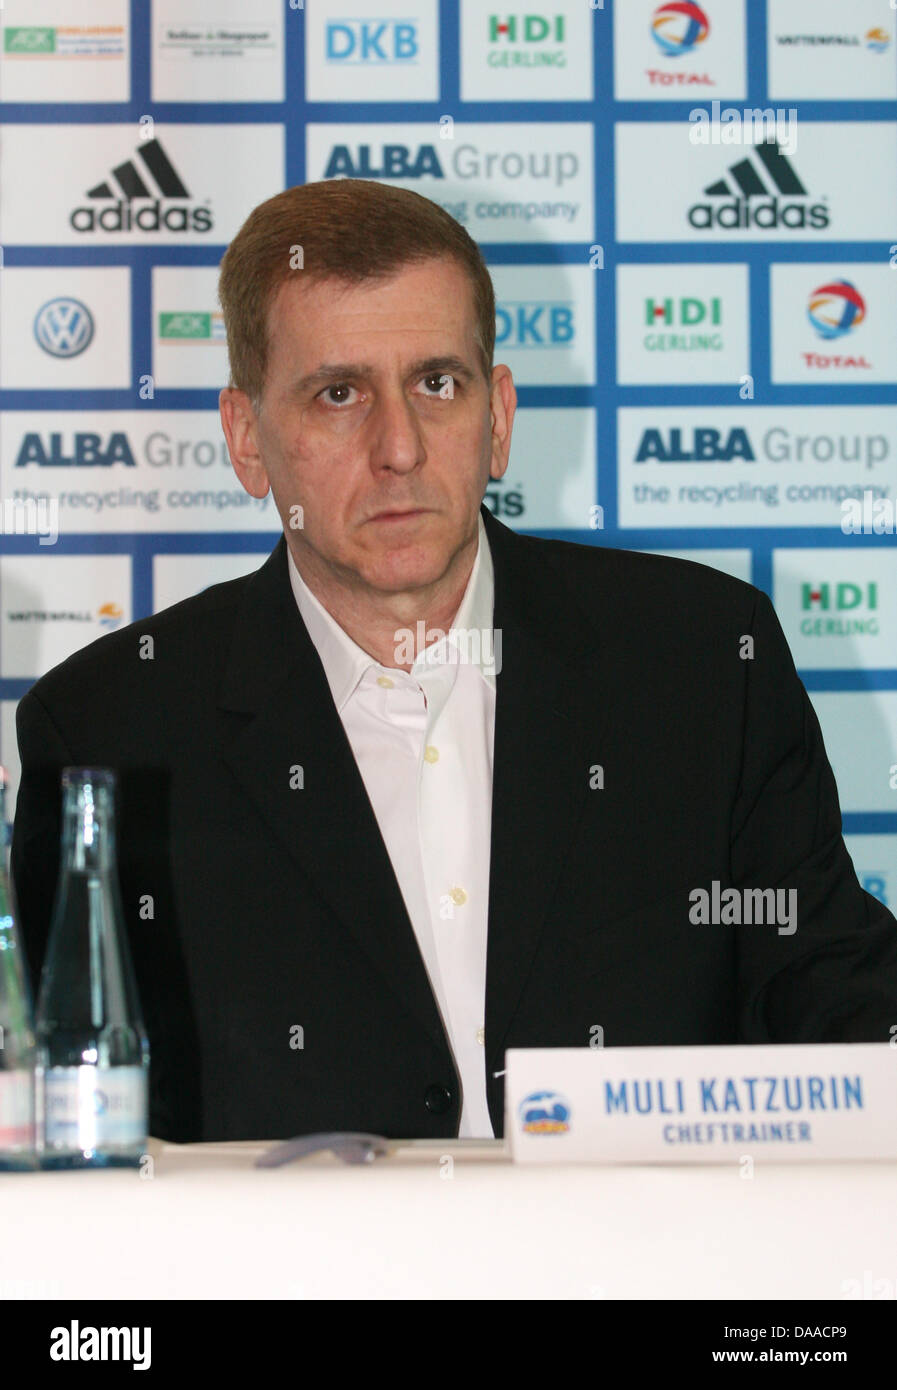 Il nuovo allenatore del basket club Alba Berlin Muli Katzurin assiste ad una conferenza stampa a Berlino, Germania, 25 gennaio 2011. Foto: Ole spara Foto Stock